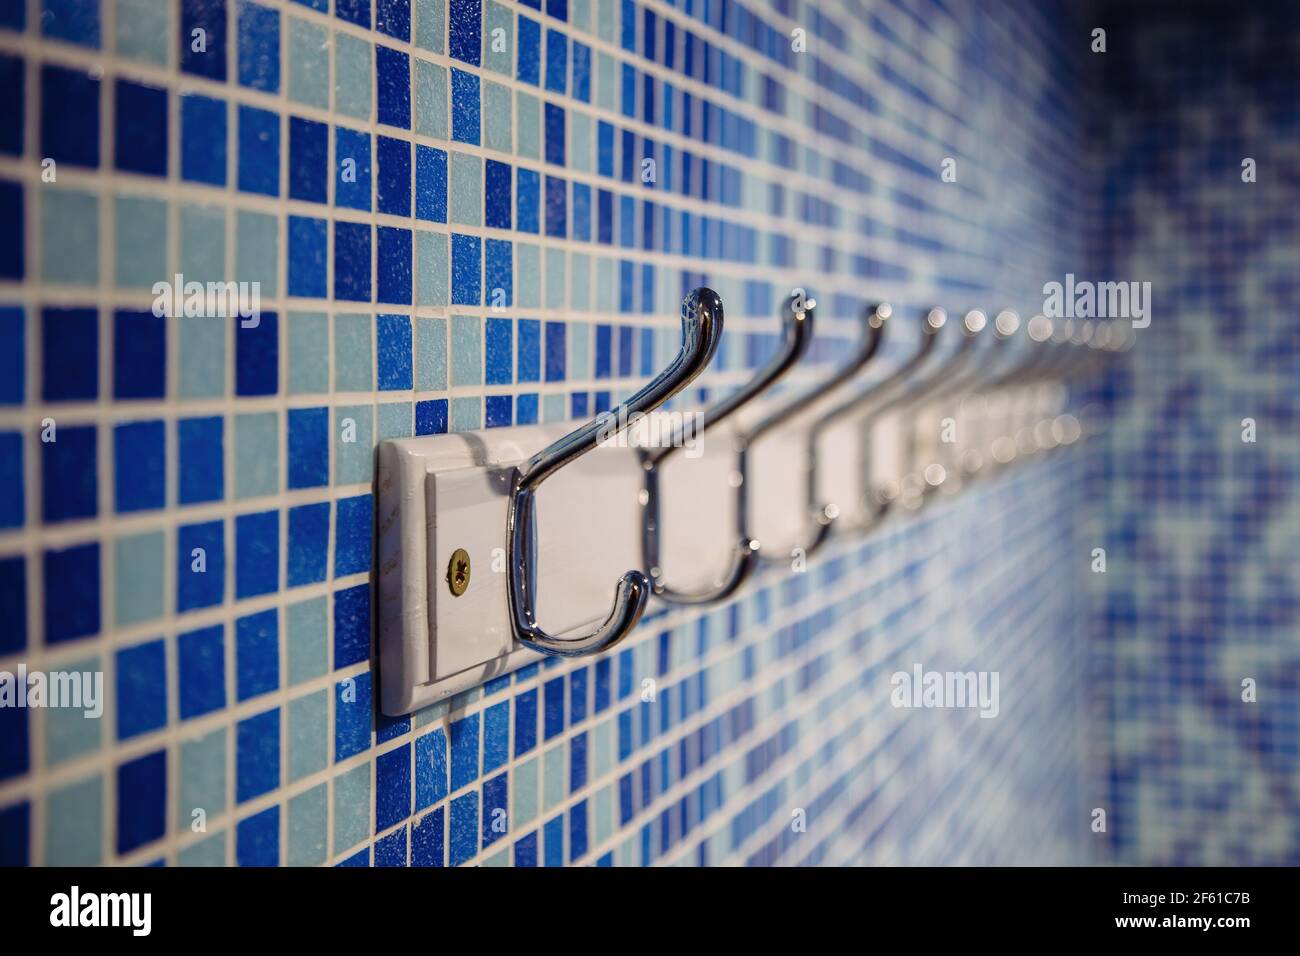 Metal hanger hooks on blue tiled wall. Stock Photo